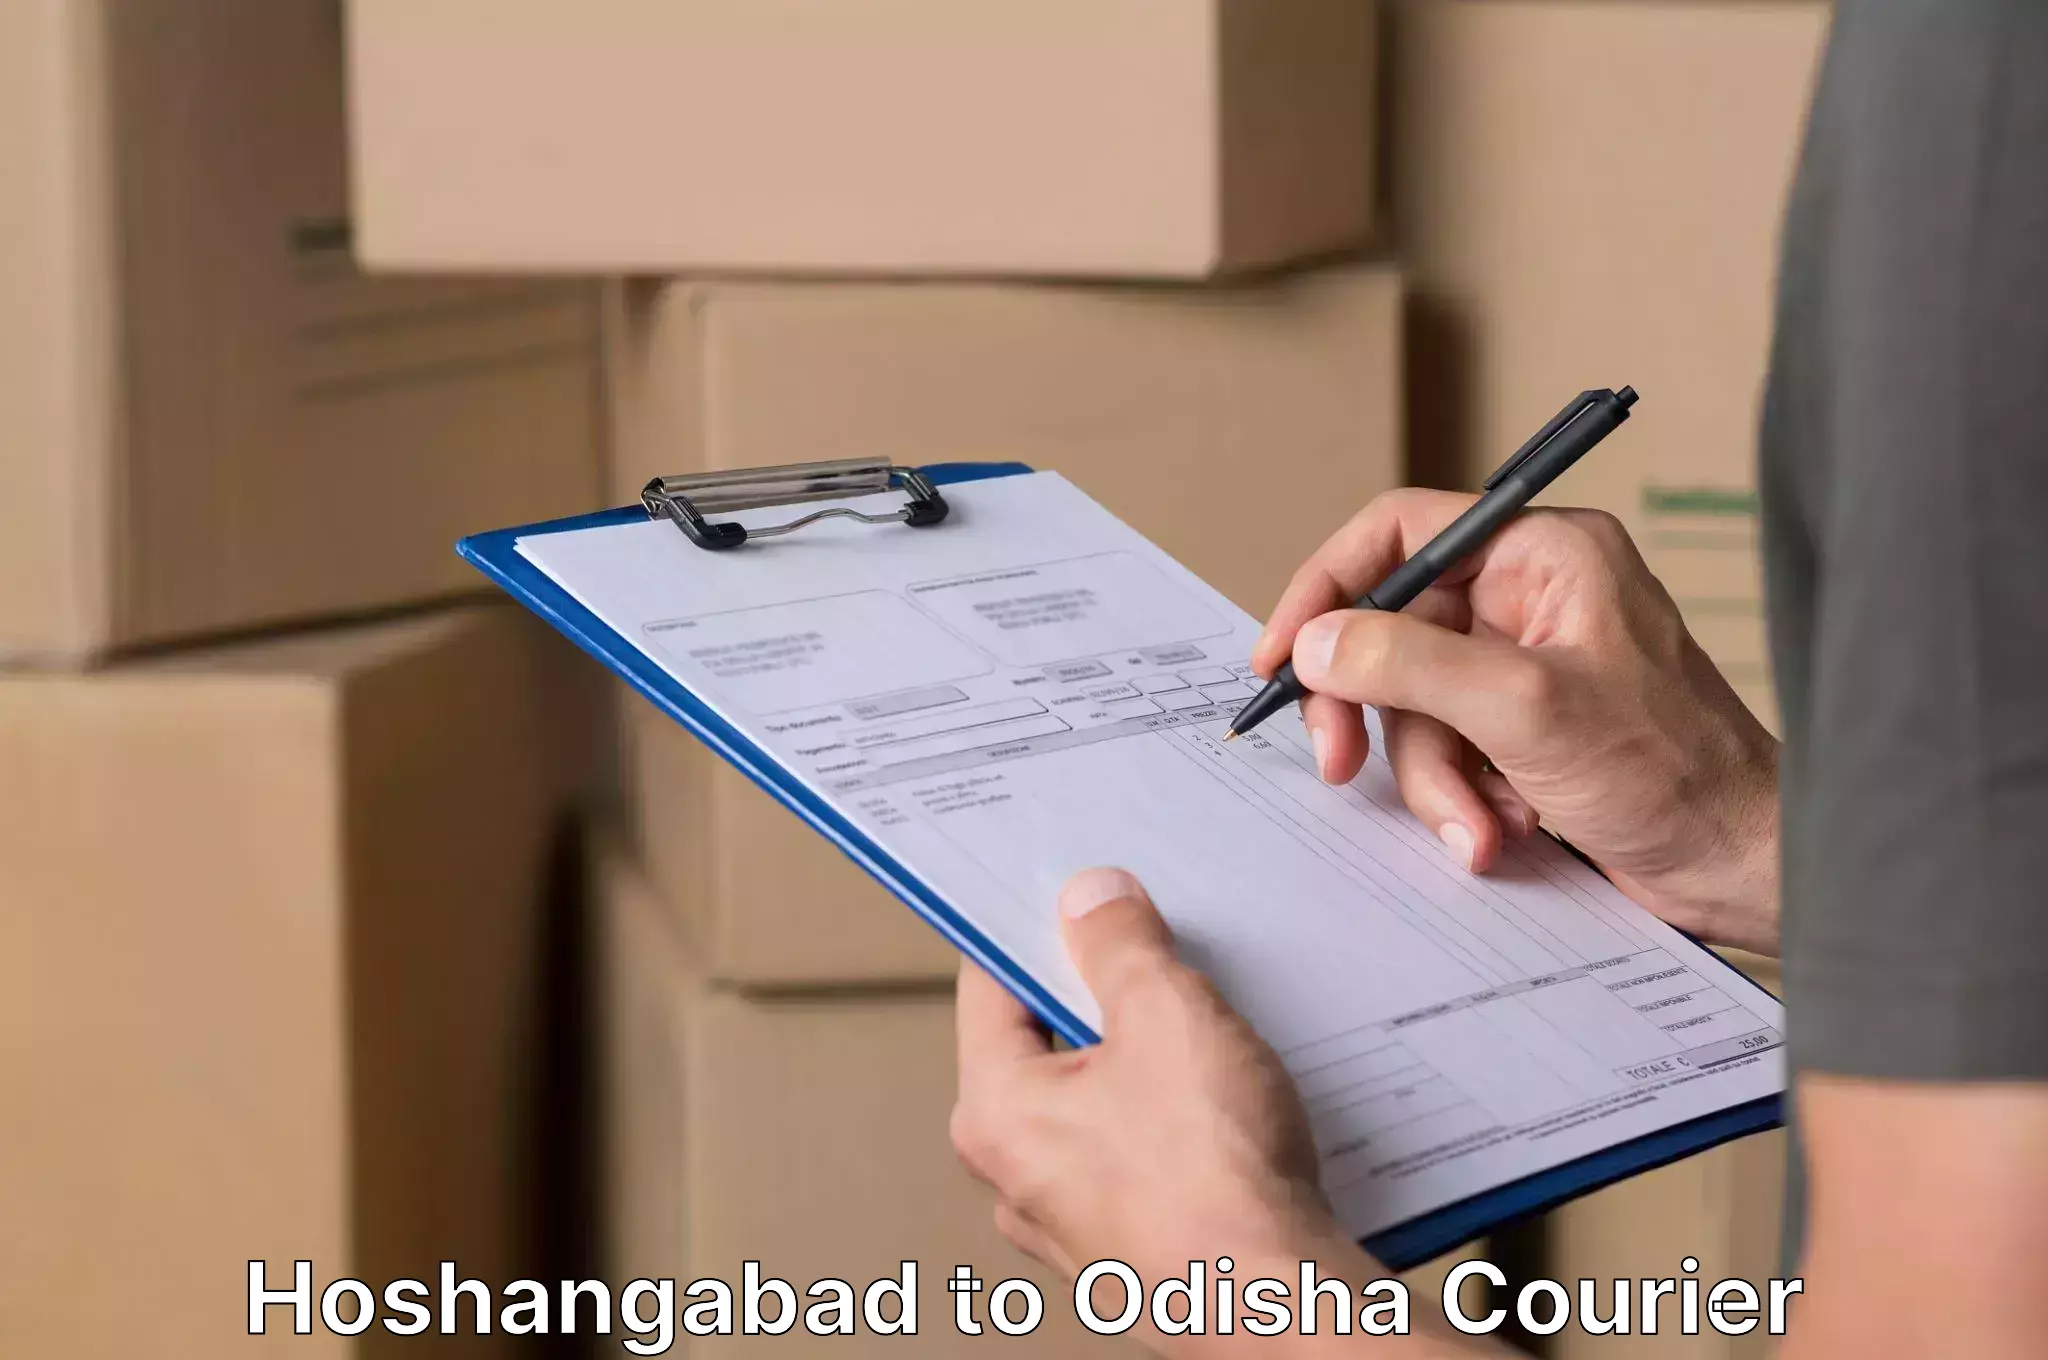 Furniture moving experts Hoshangabad to Barkote